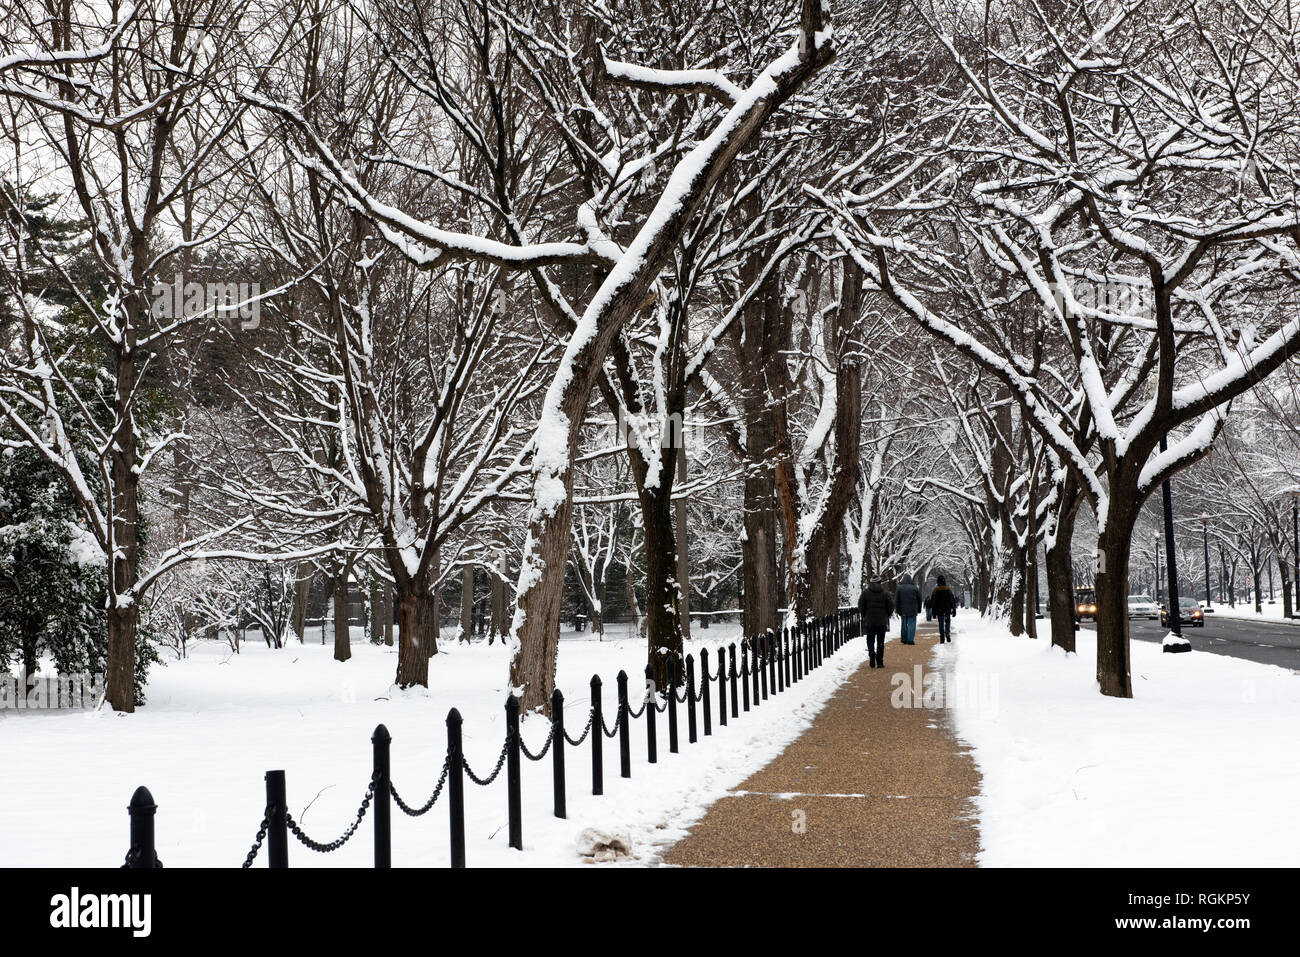 WASHINGTON, DC - frisch gefallener Schnee auf Bäumen, die einen Gehweg entlang des Lincoln Memorial Reflecting Pool in Washington DC säumen. Stockfoto